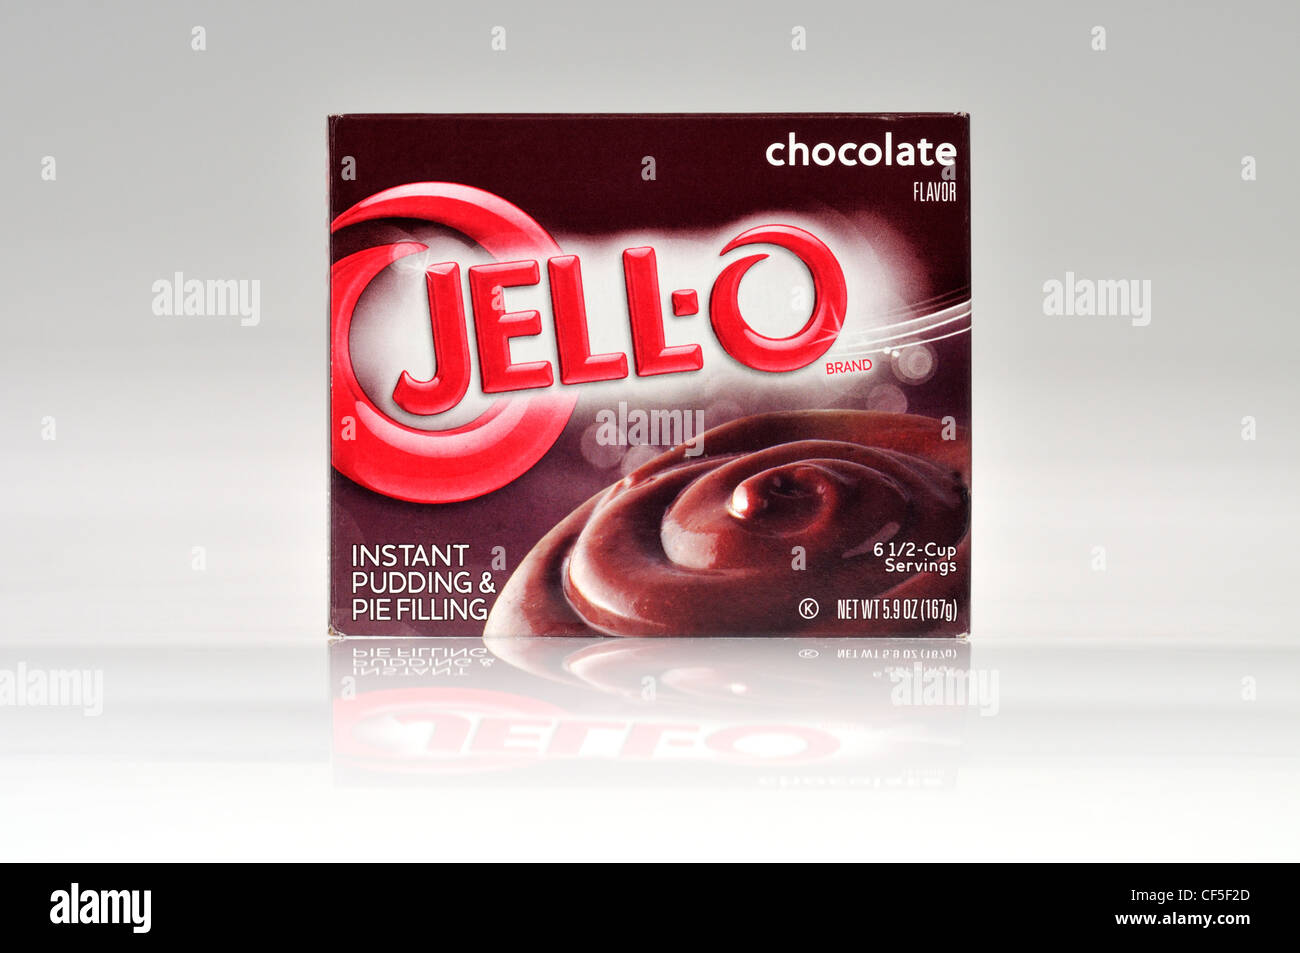 Un paquet de jello ou pudding instantané Jell-O et de la garniture pour tarte chocolat, saveur sur fond blanc découper des USA. Banque D'Images